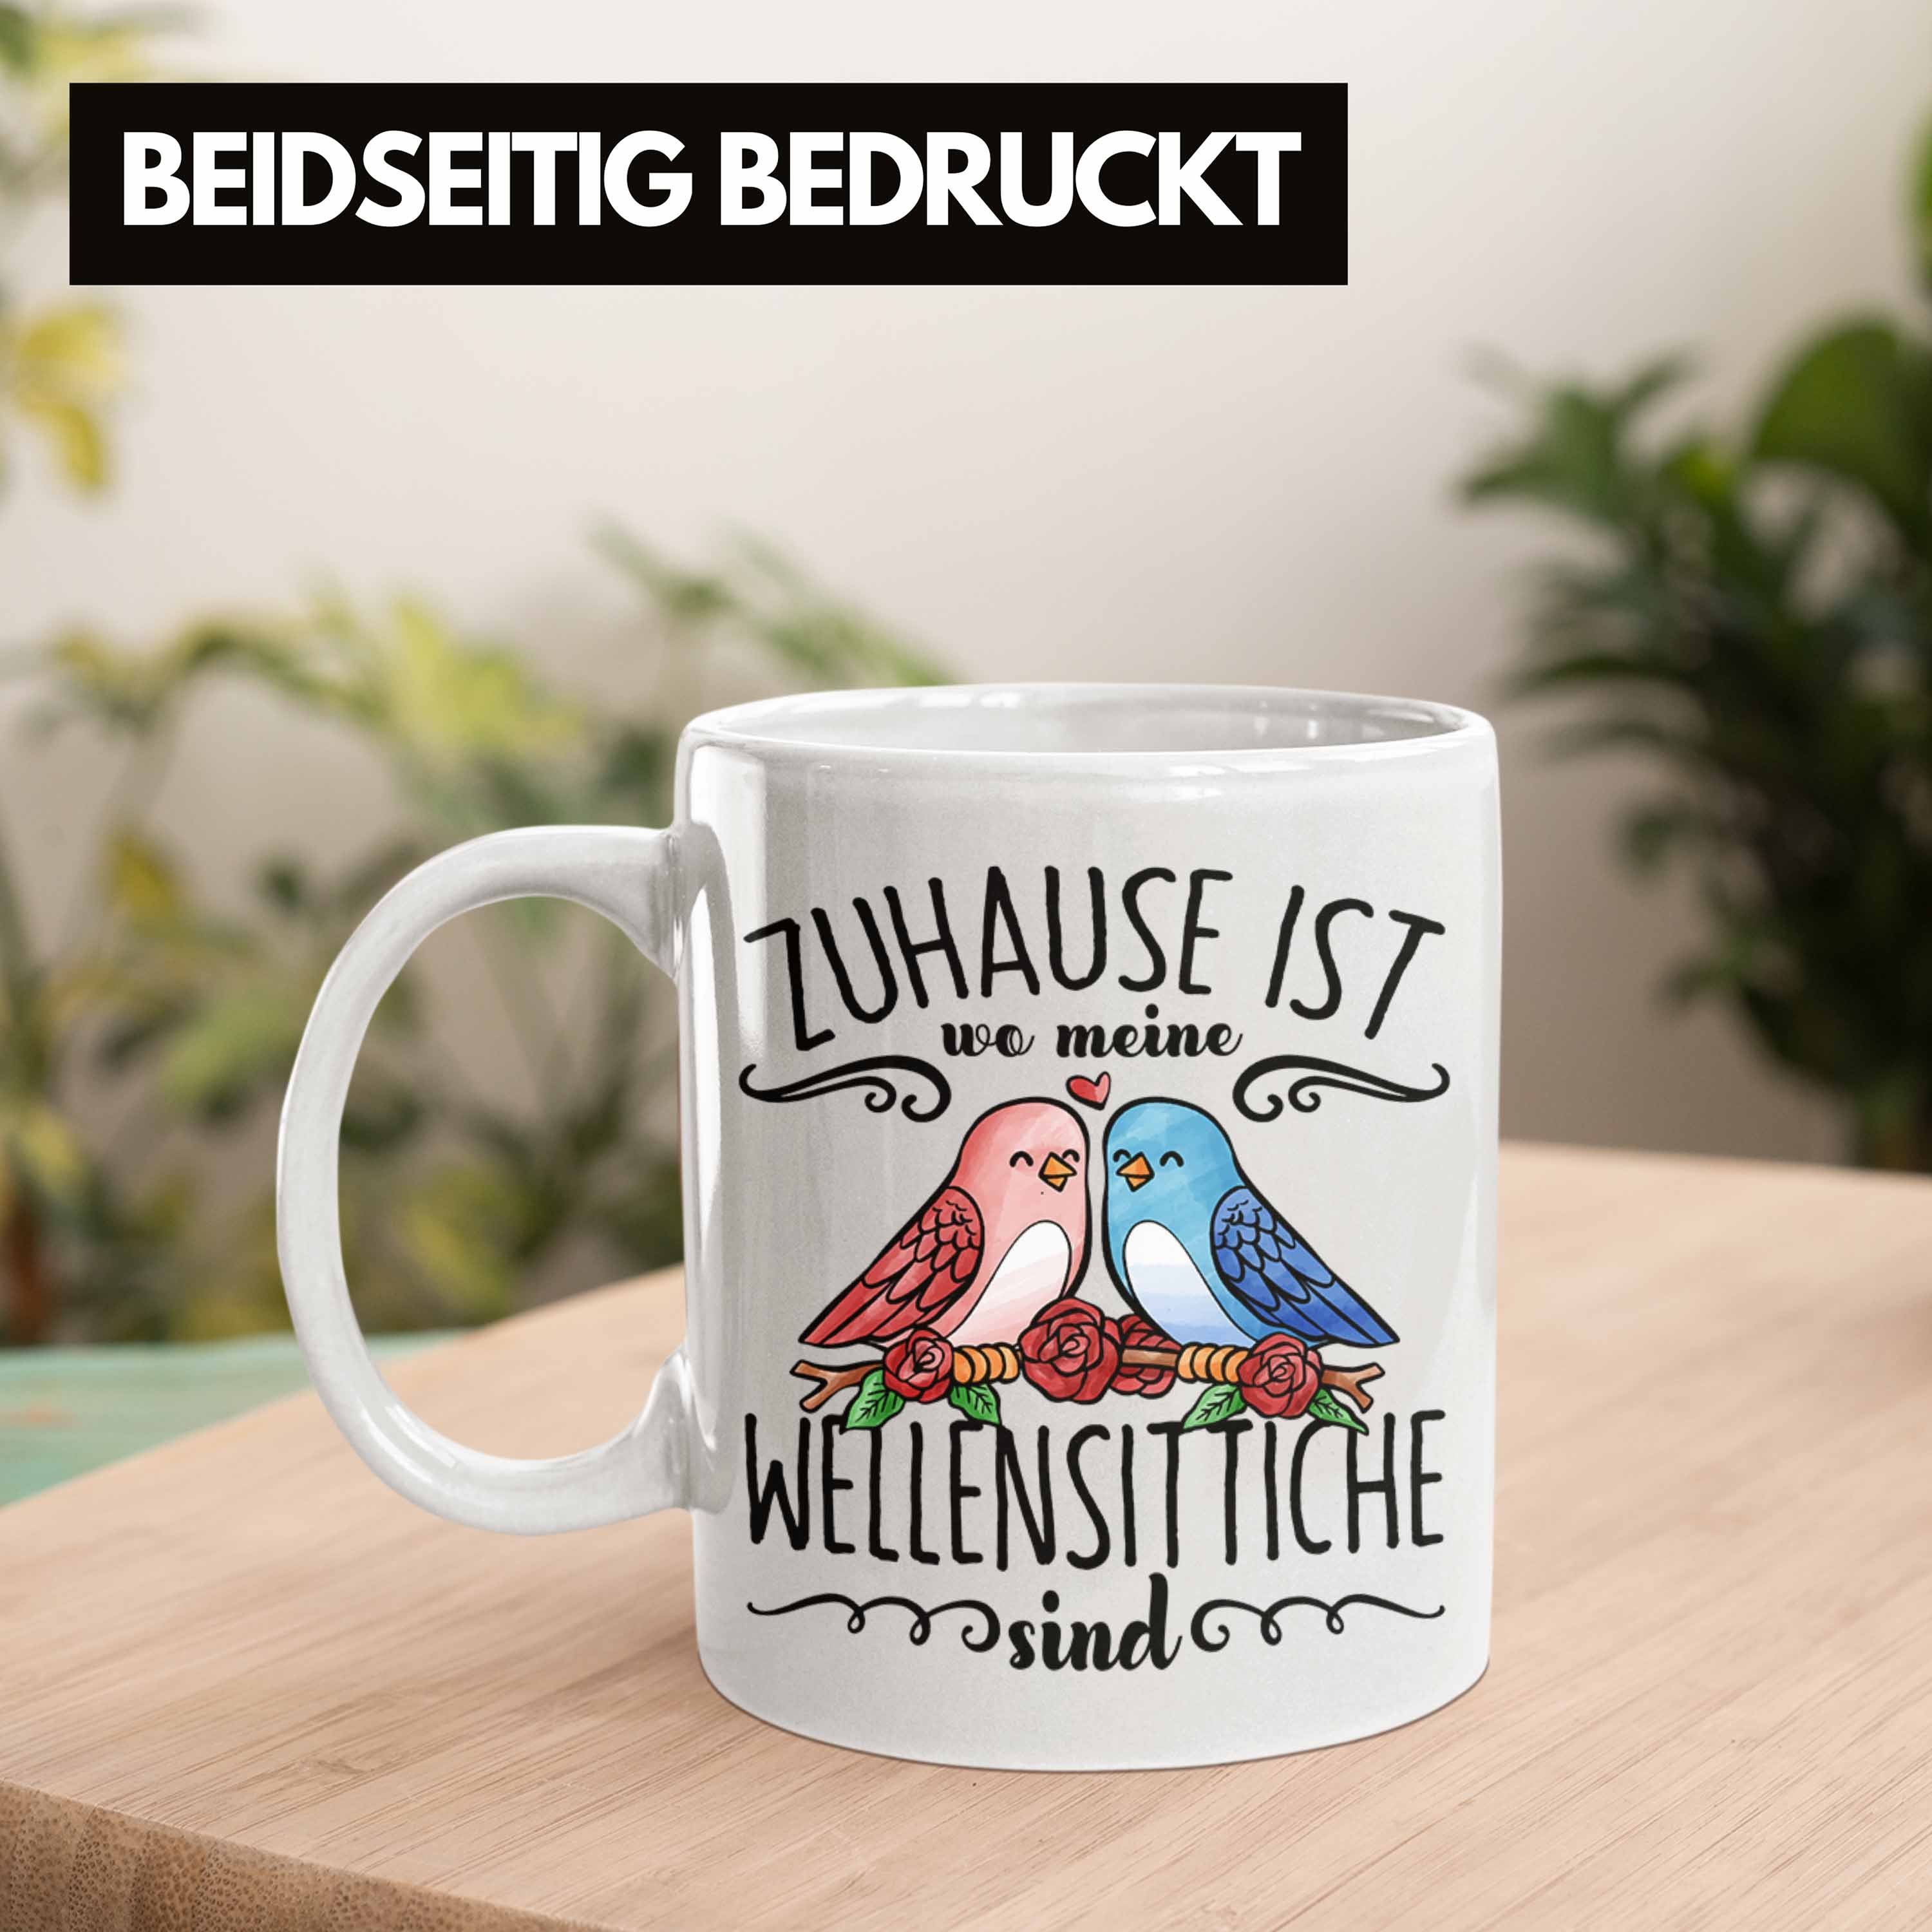 Ist Tasse Zuhause Wellensittic Trendation Weiss Besitzer Lustige Meine Wo Tasse Wellensittich